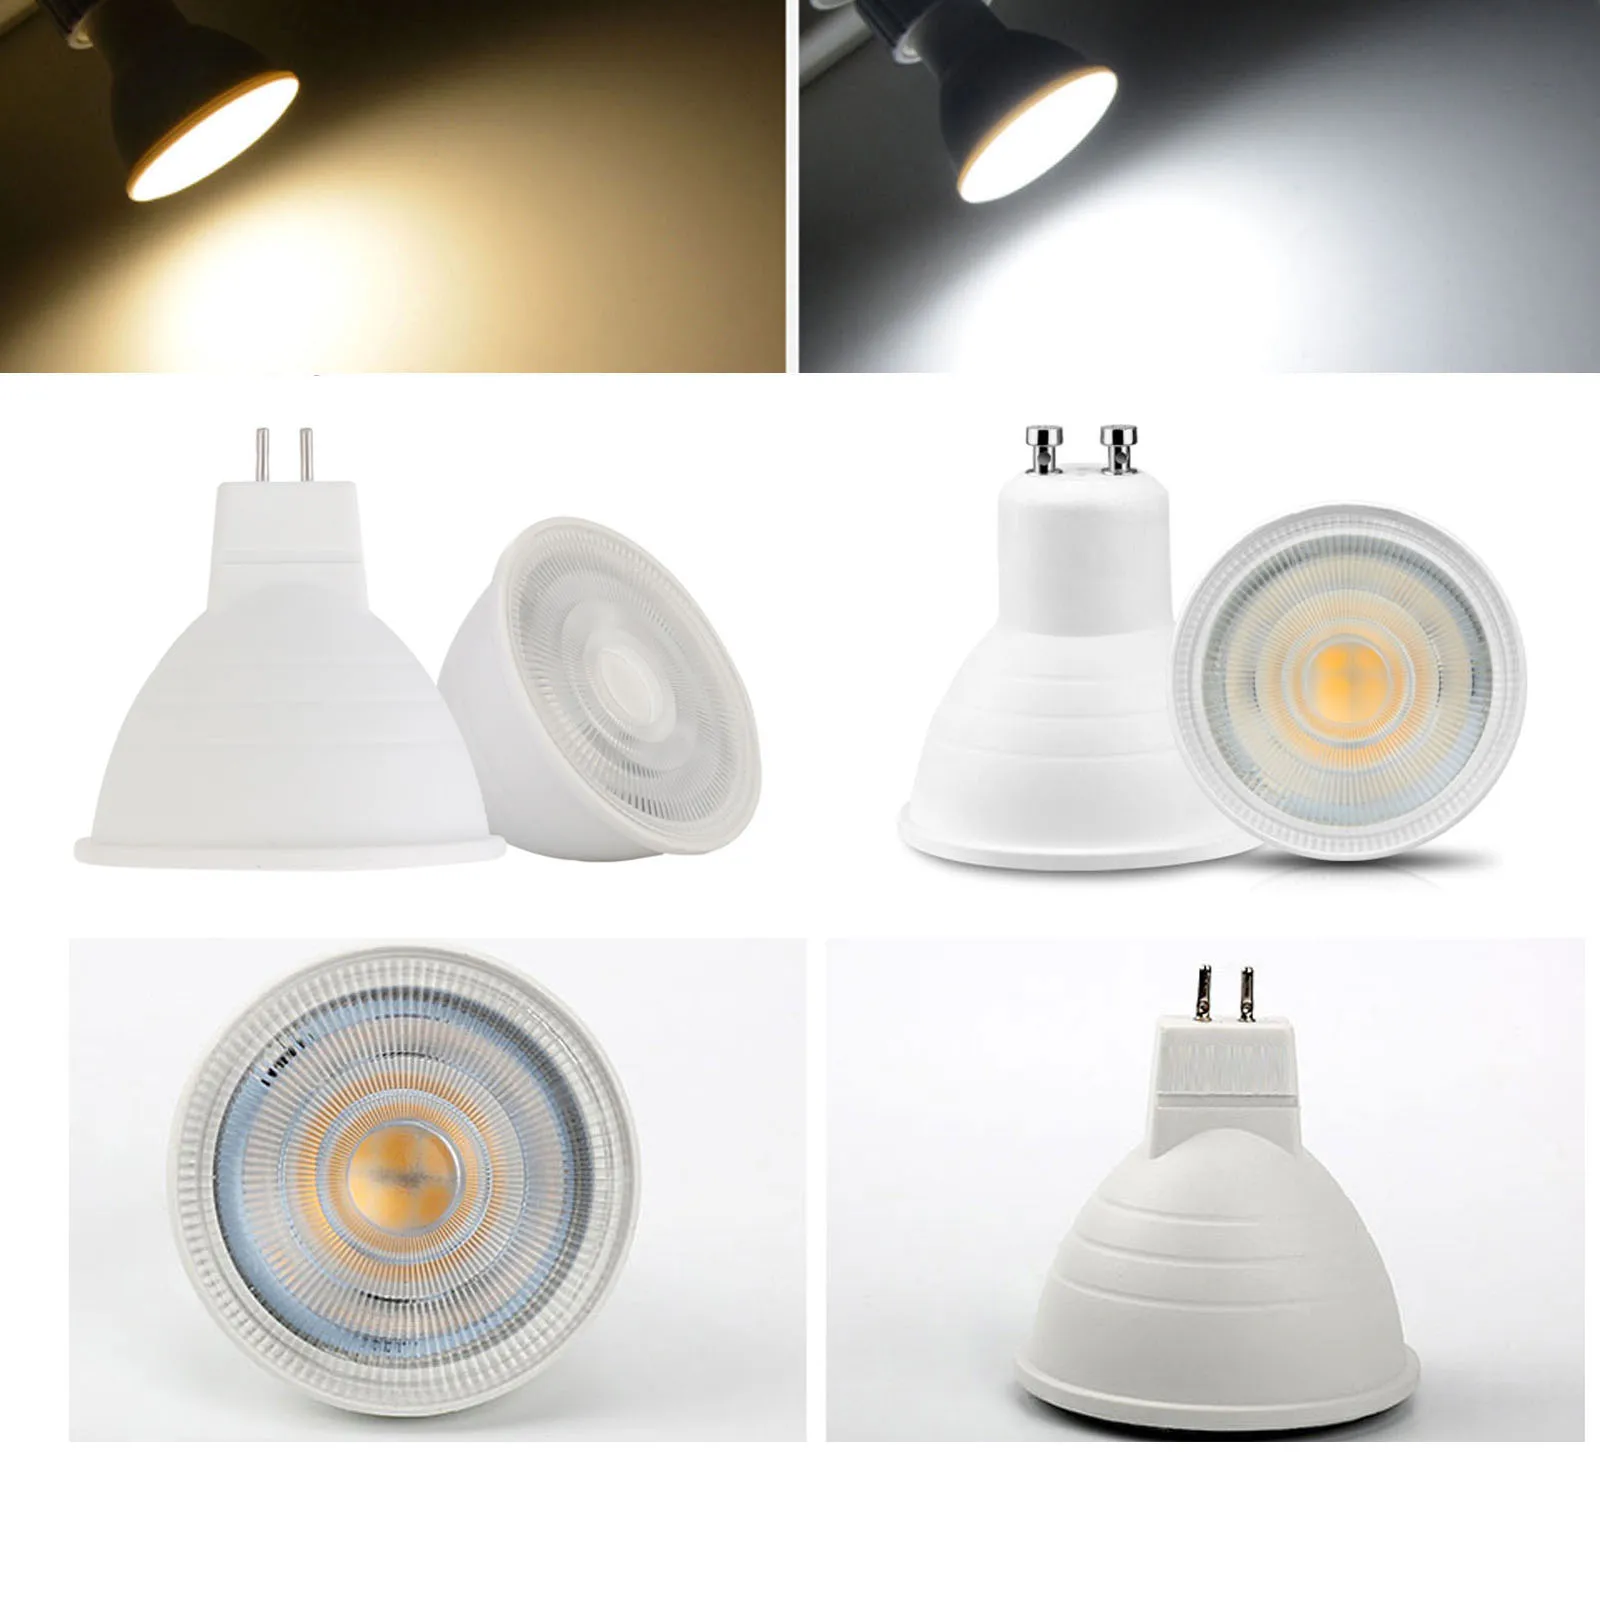 

Dimmable LED Lamp GU10 LED Spotlight Bulb 110V 220V 7W MR16 GU5.3 COB Chip 30 Degree Beam Angle For Home Office Decor Light Lamp